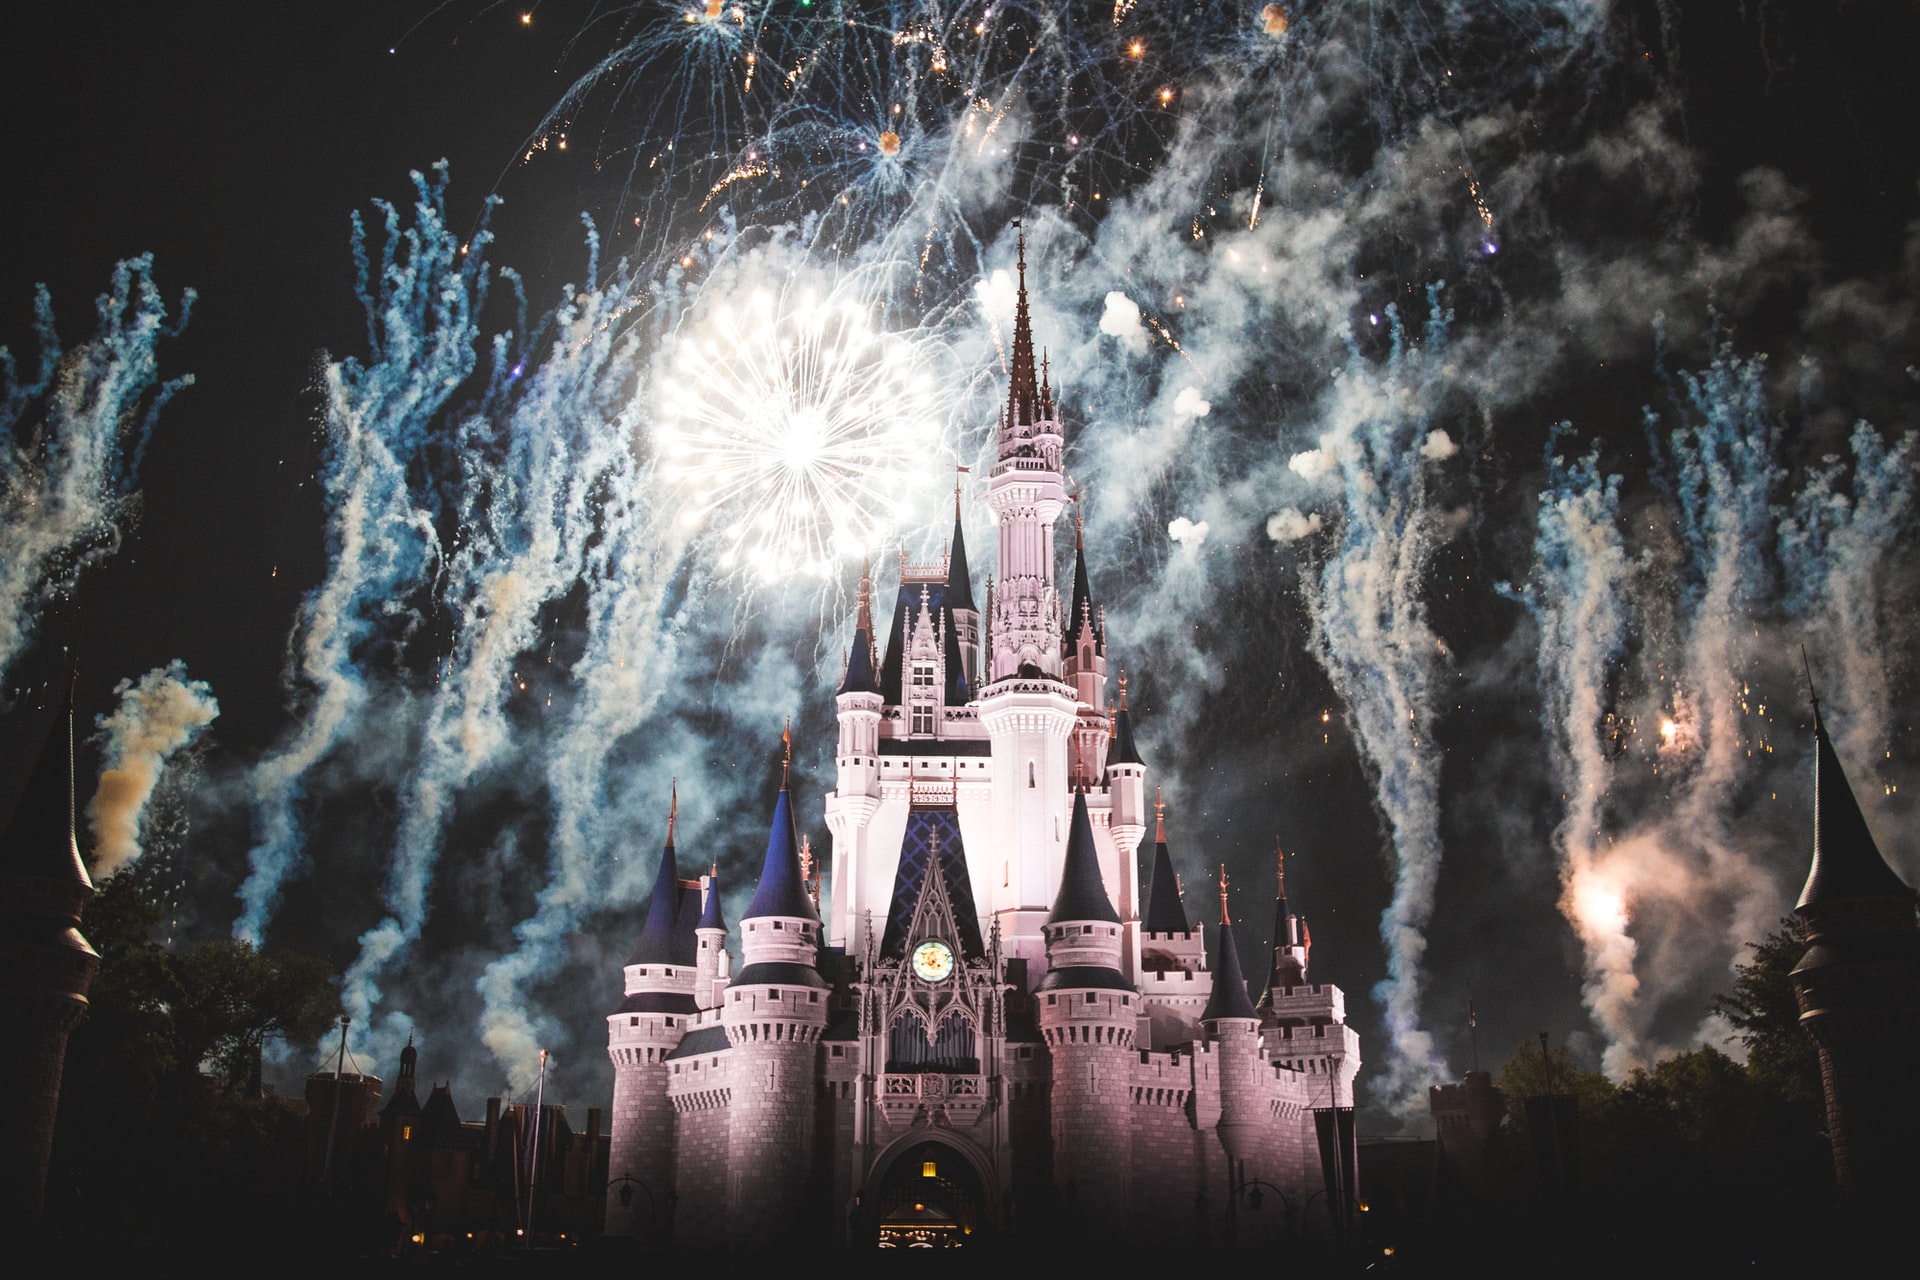 Show de fogos no Magic Kingdom, Disney Orlando